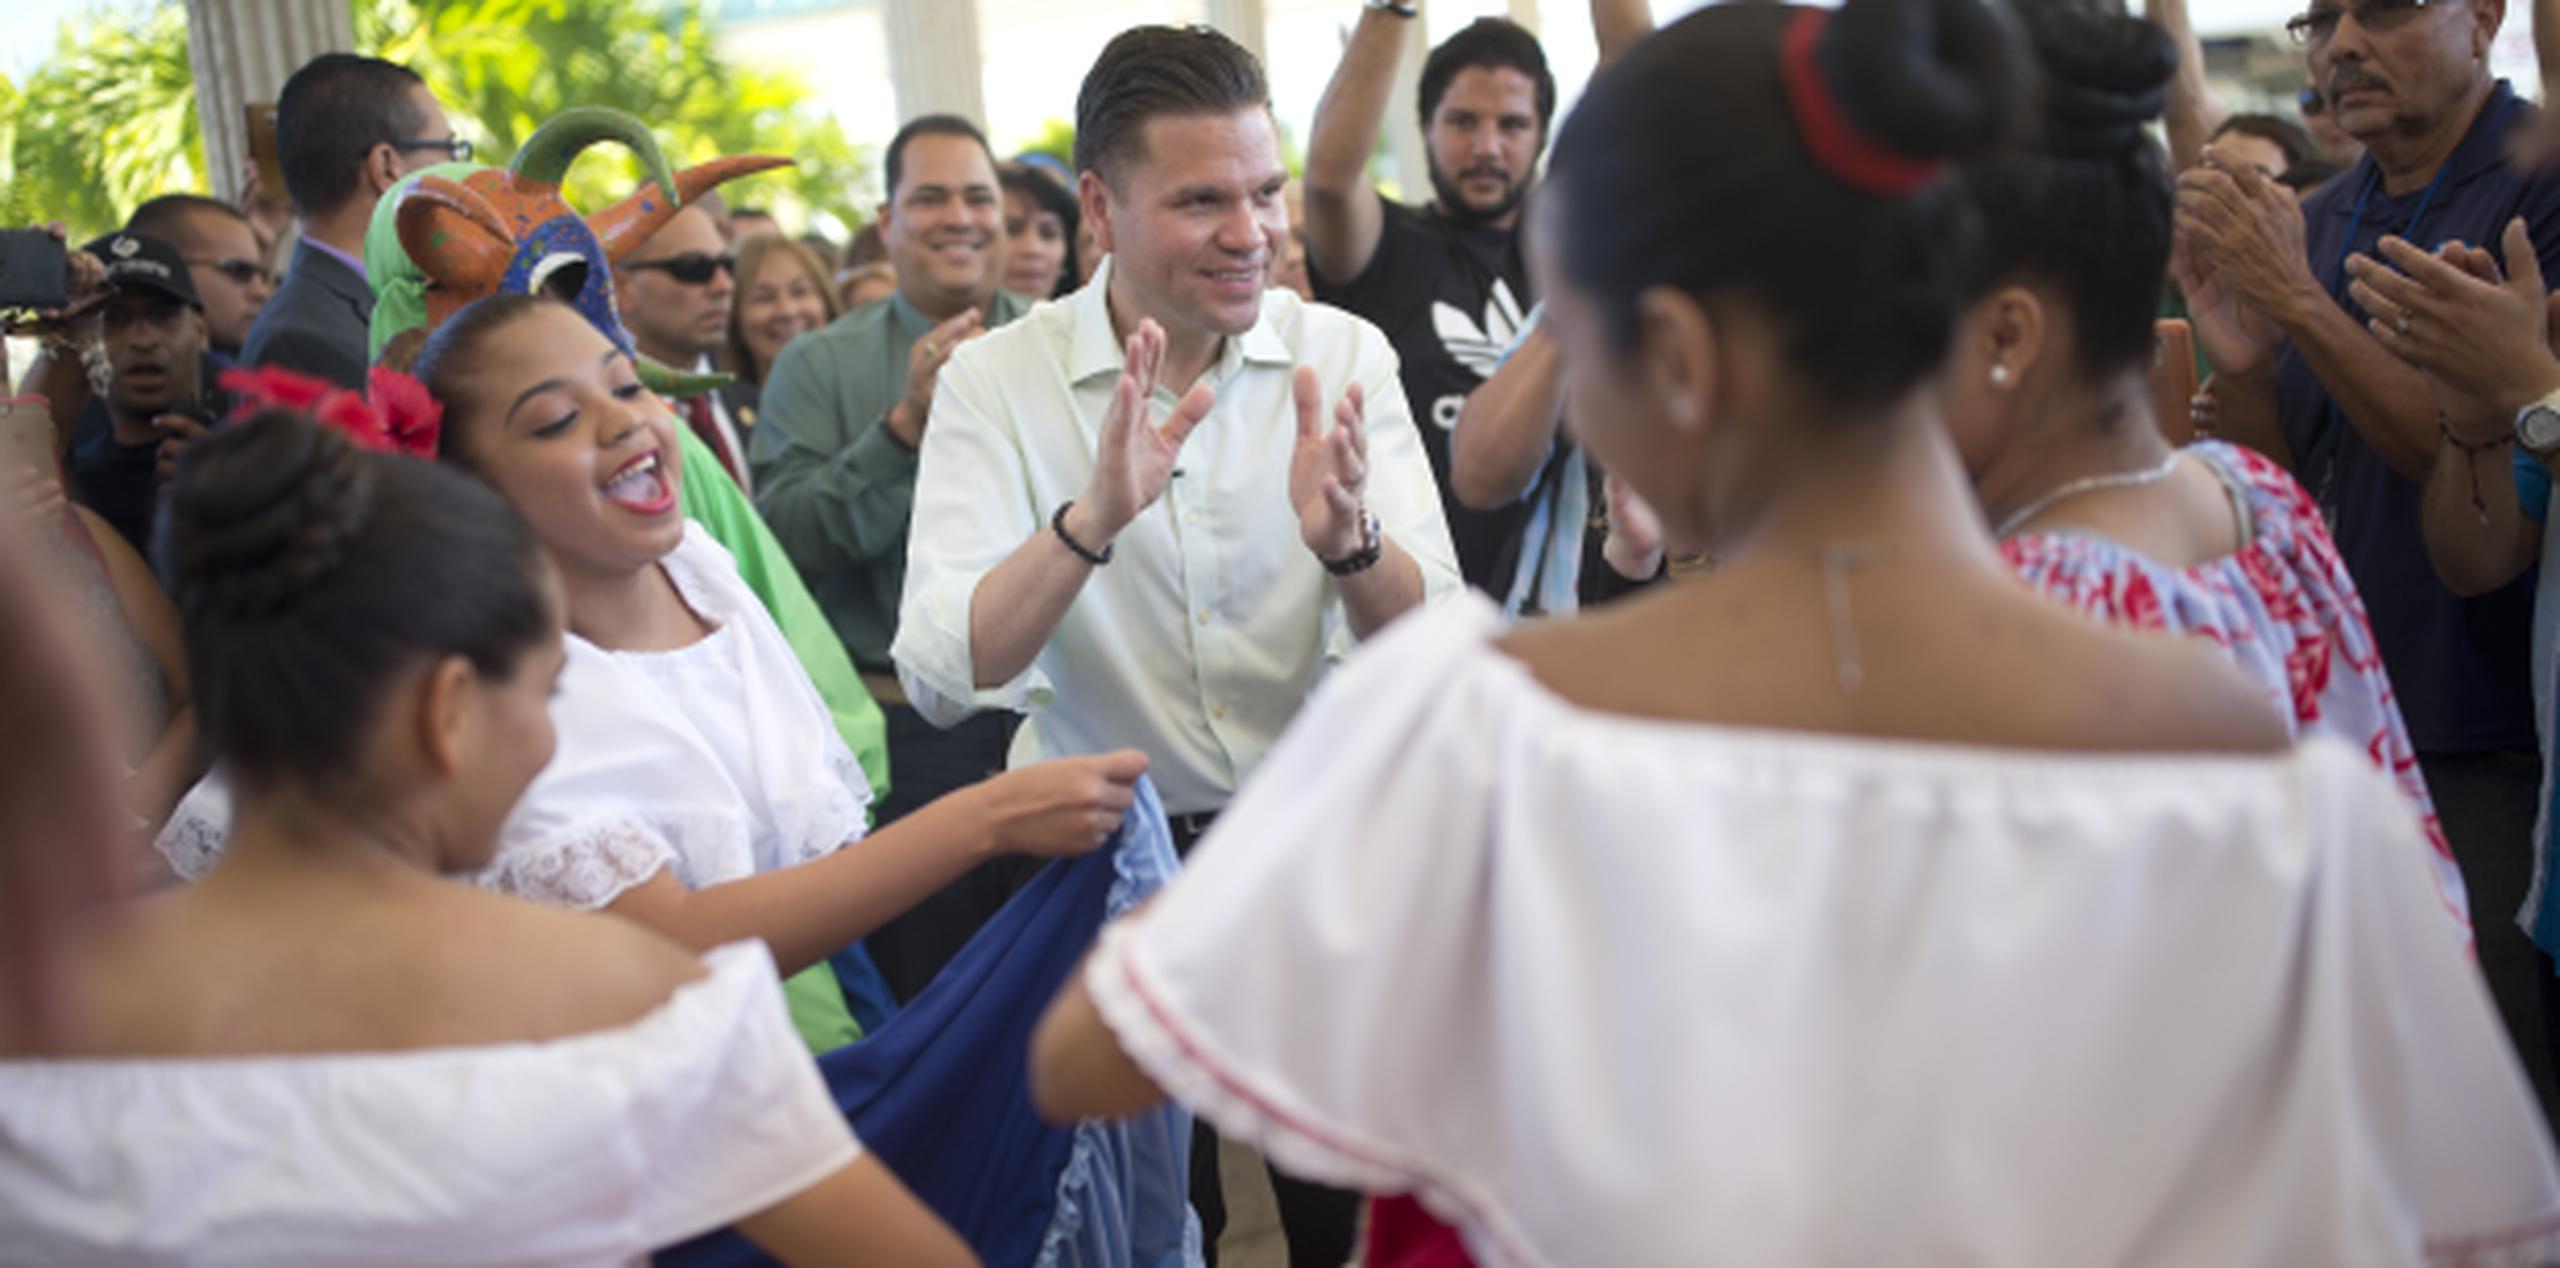 El alcalde de Cataño, Félix Delgado, rodeado de bailarinas y vejigantes en el corte de cinta “Cataño Pa’ las Fiestas”. (xavier.araujo@gfrmedia.com)